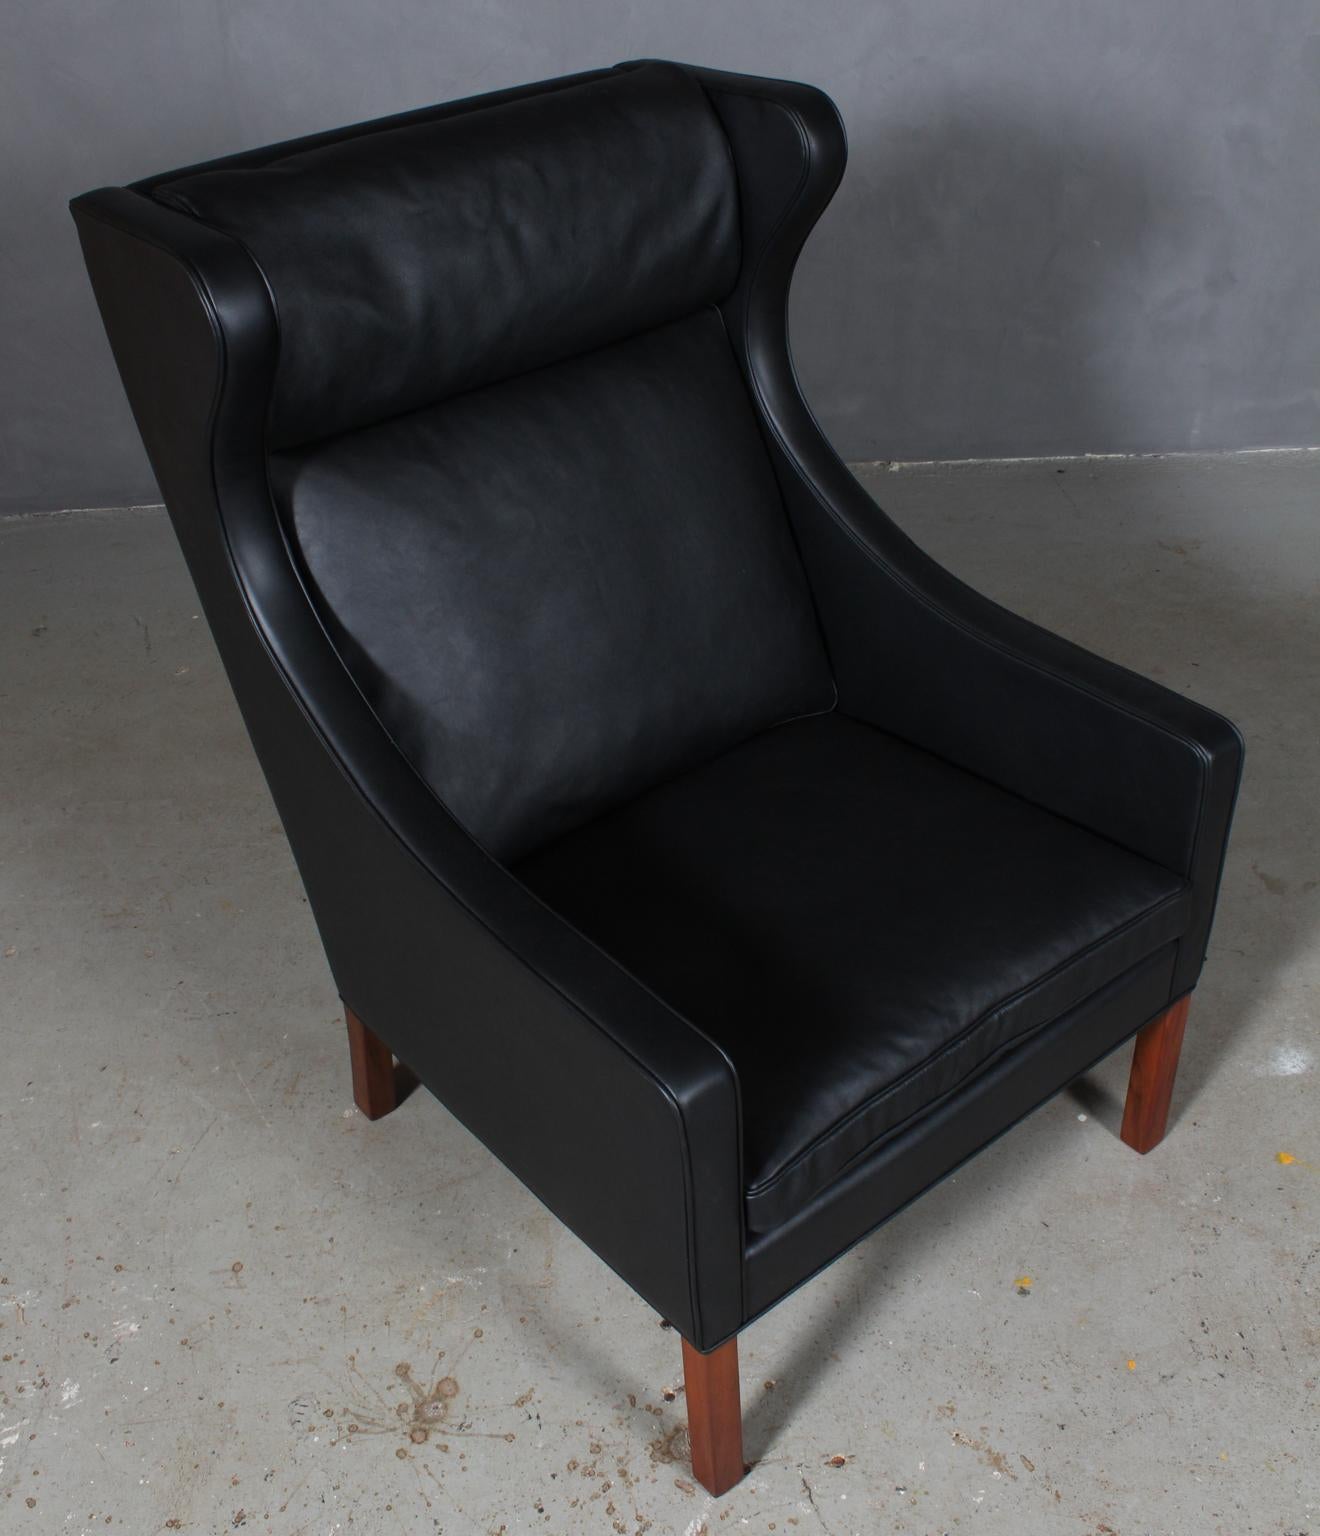 Chaise à oreilles Børge Mogensen nouvellement tapissée de cuir noir élégant.

Pieds en teck.

Modèle 2204, fabriqué par Fredericia Furniture.